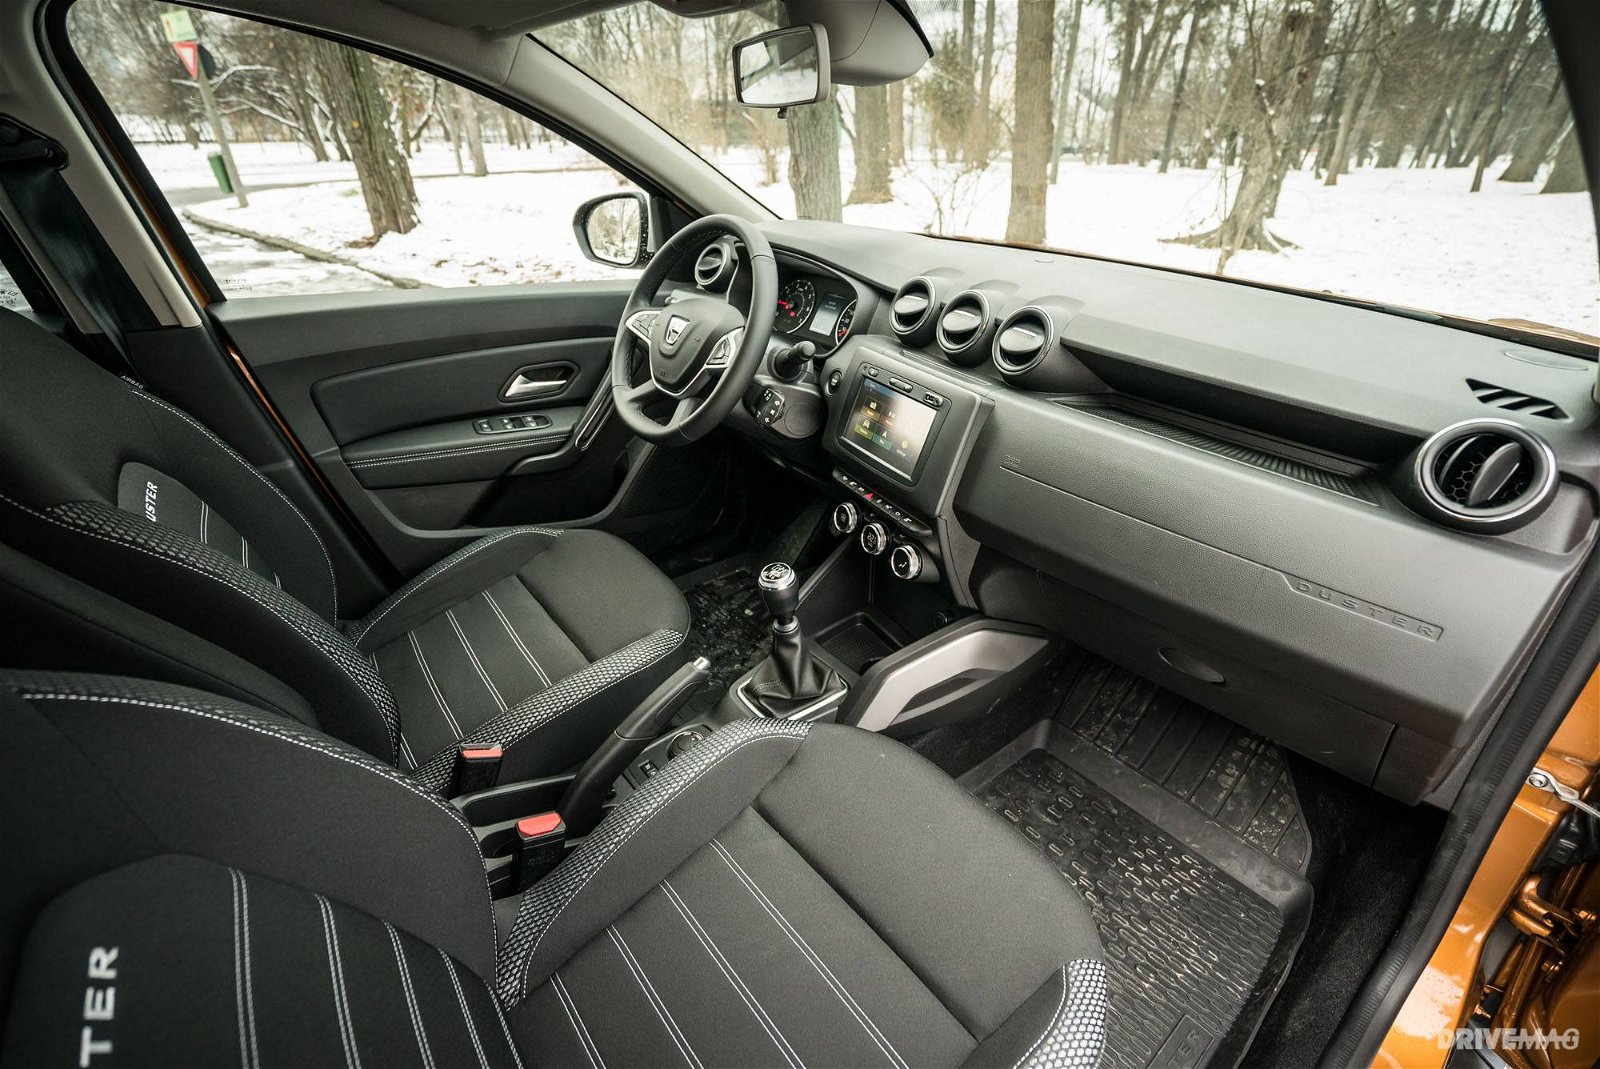 2018 Dacia Duster Dci 110 4x4 Prestige Review Smarter